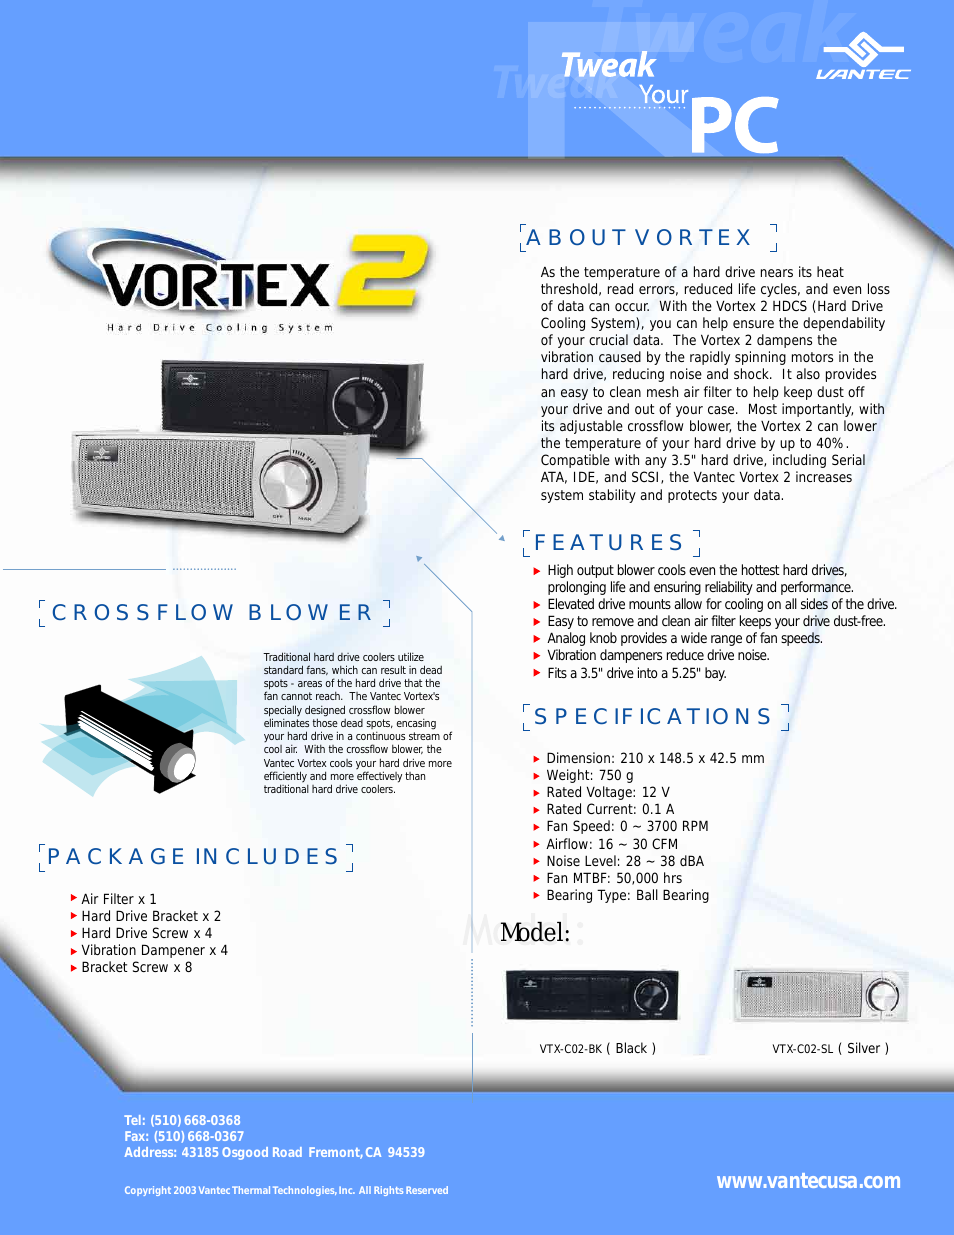 Hard Drive Cooling System Vortex 2